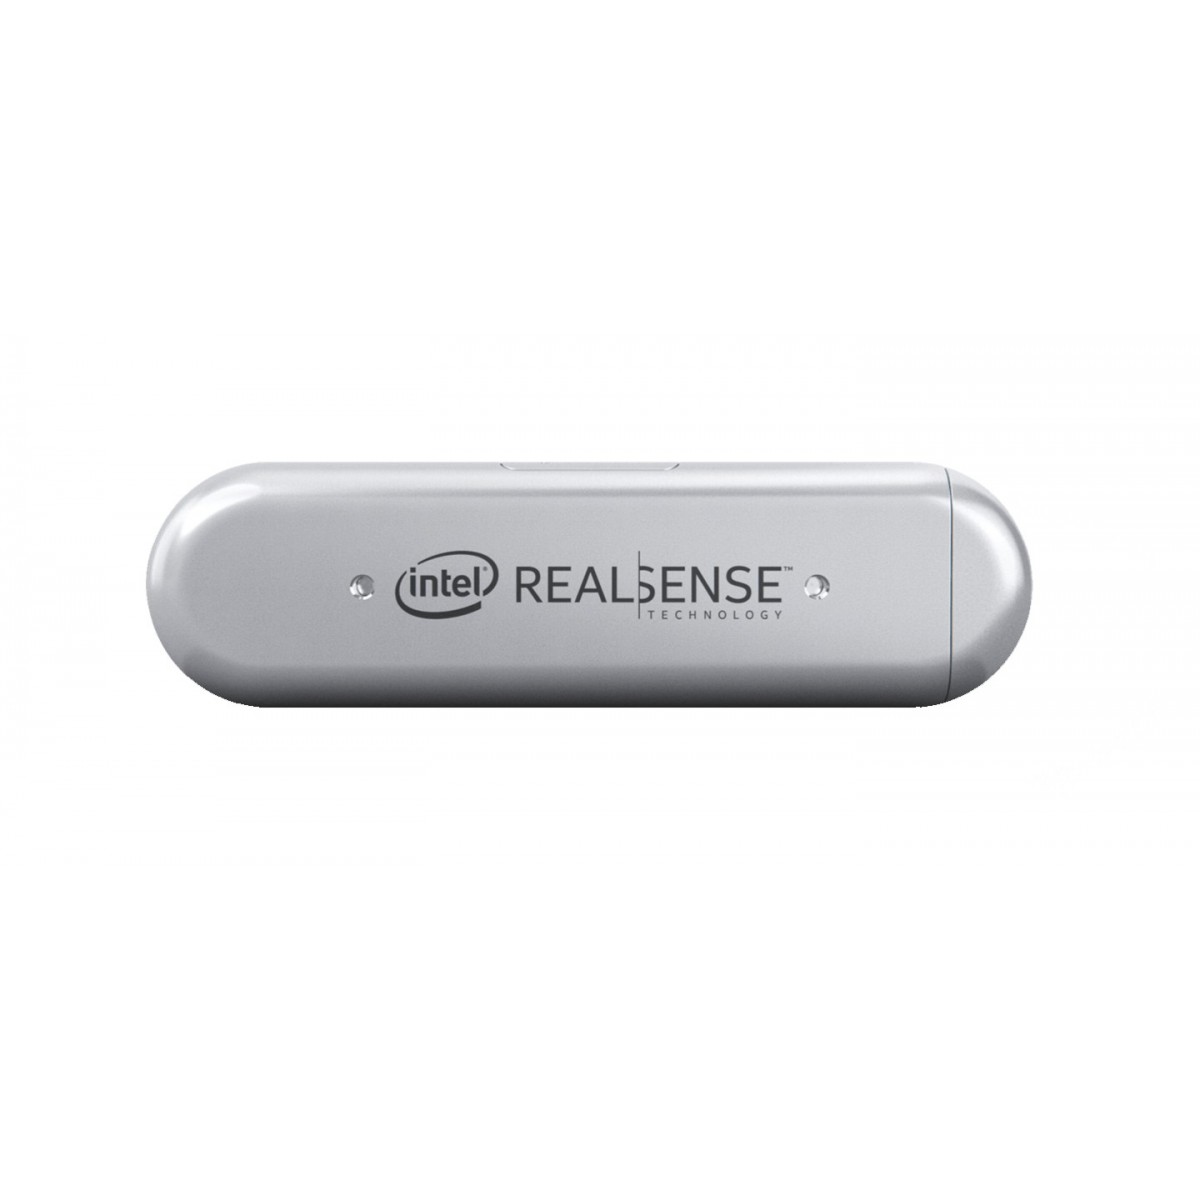 Intel RealSense D435i - Camera - Intel - Silver - 10 m - 0.105 m - 1920 x 1080 pixels